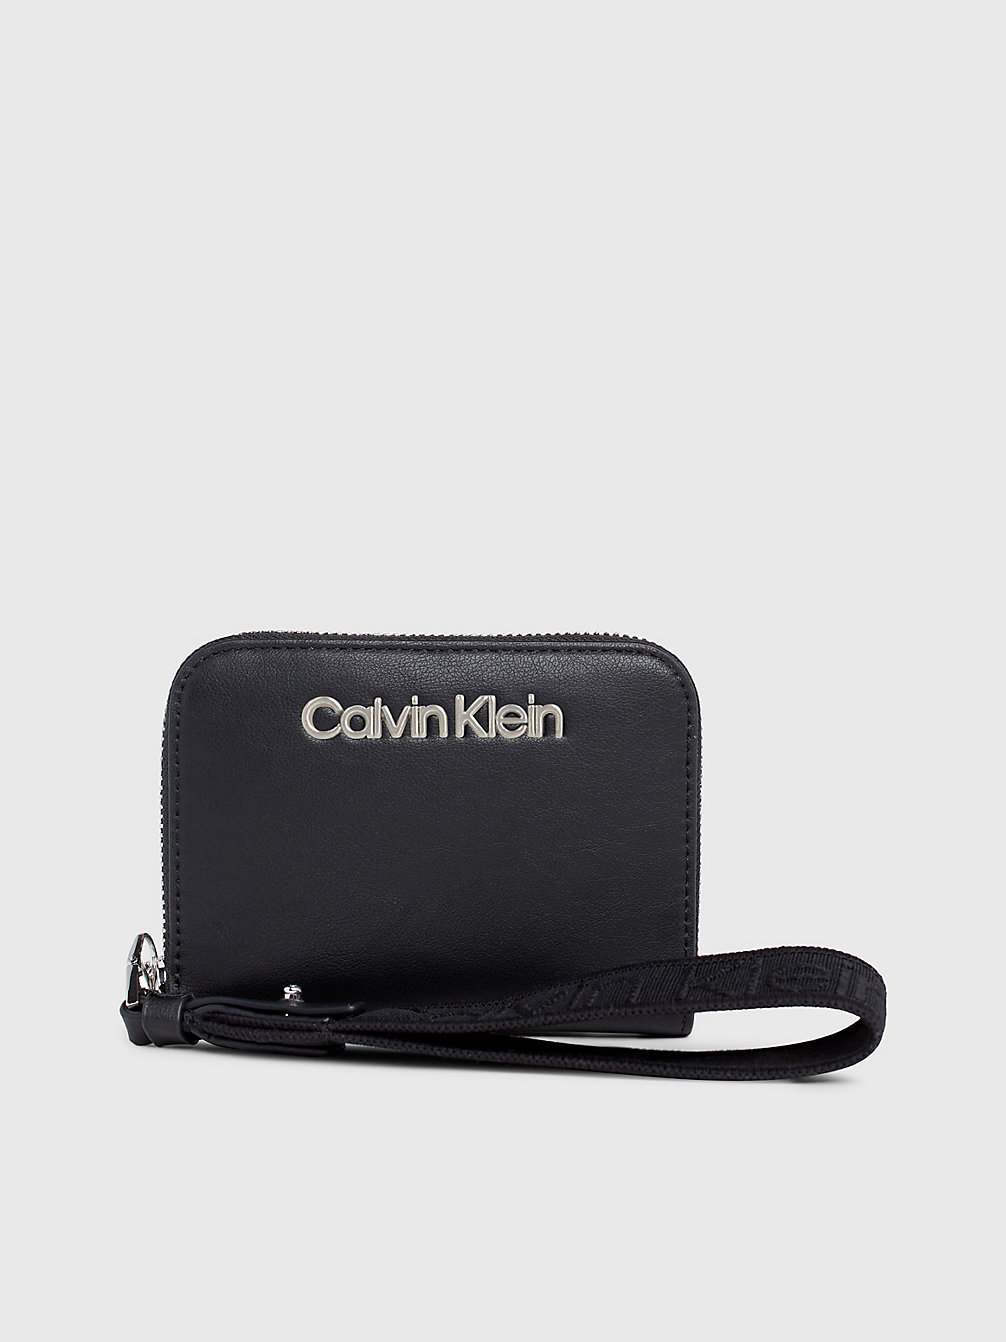 CK BLACK Portafoglio Con Zip Integrale E Borsellino Portamonete Da Polso Rfid undefined Donne Calvin Klein